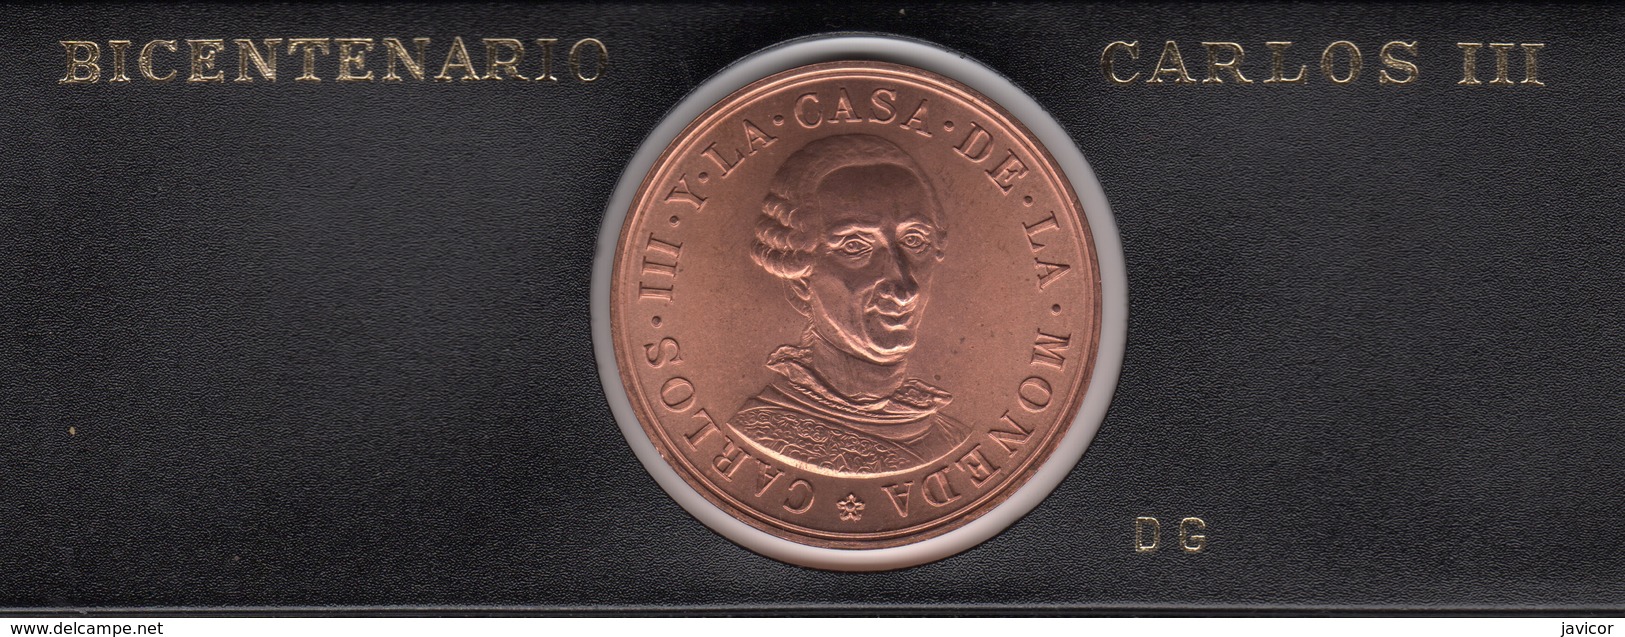 1988 Bicentenerio Carlos II - Münz- Und Jahressets